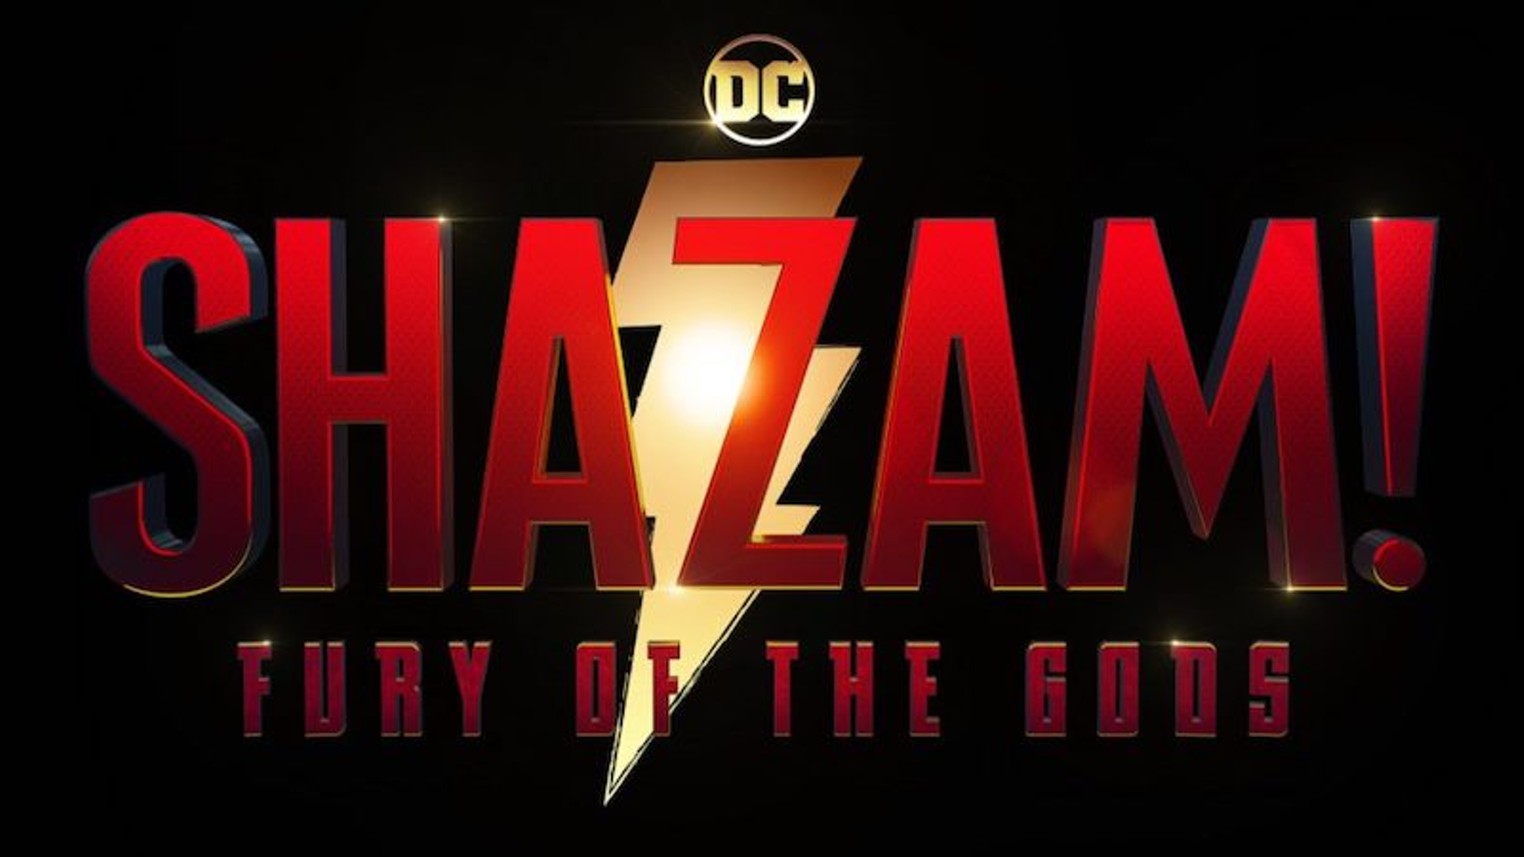 Shazam Fury of the gods ratings